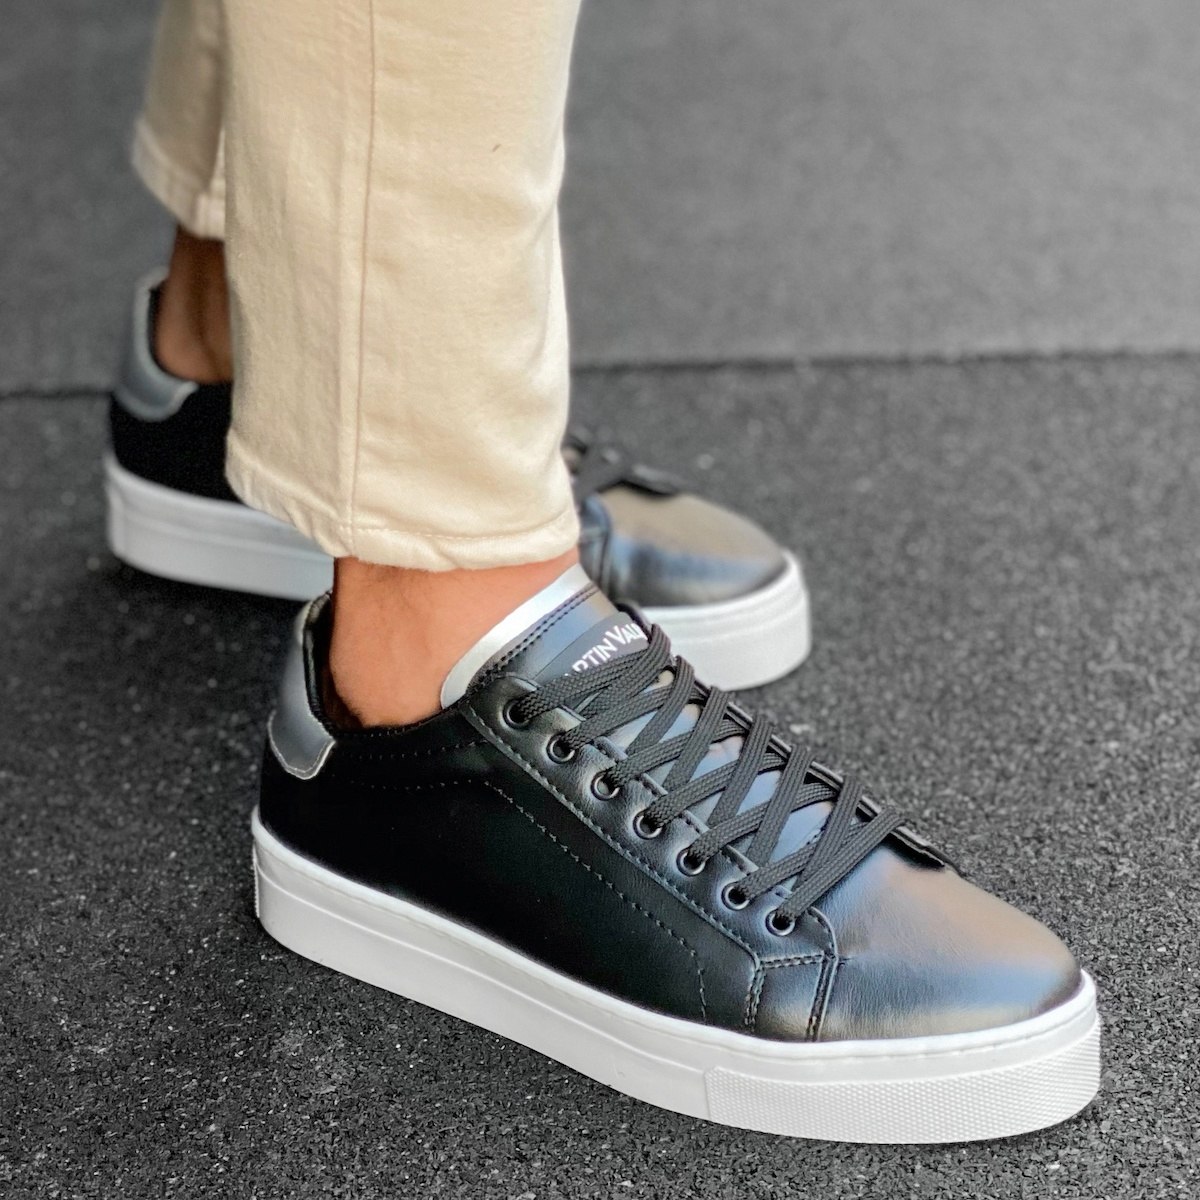 Herren Low Top Casual Sneakers Schuhe in silber-schwarz - 1